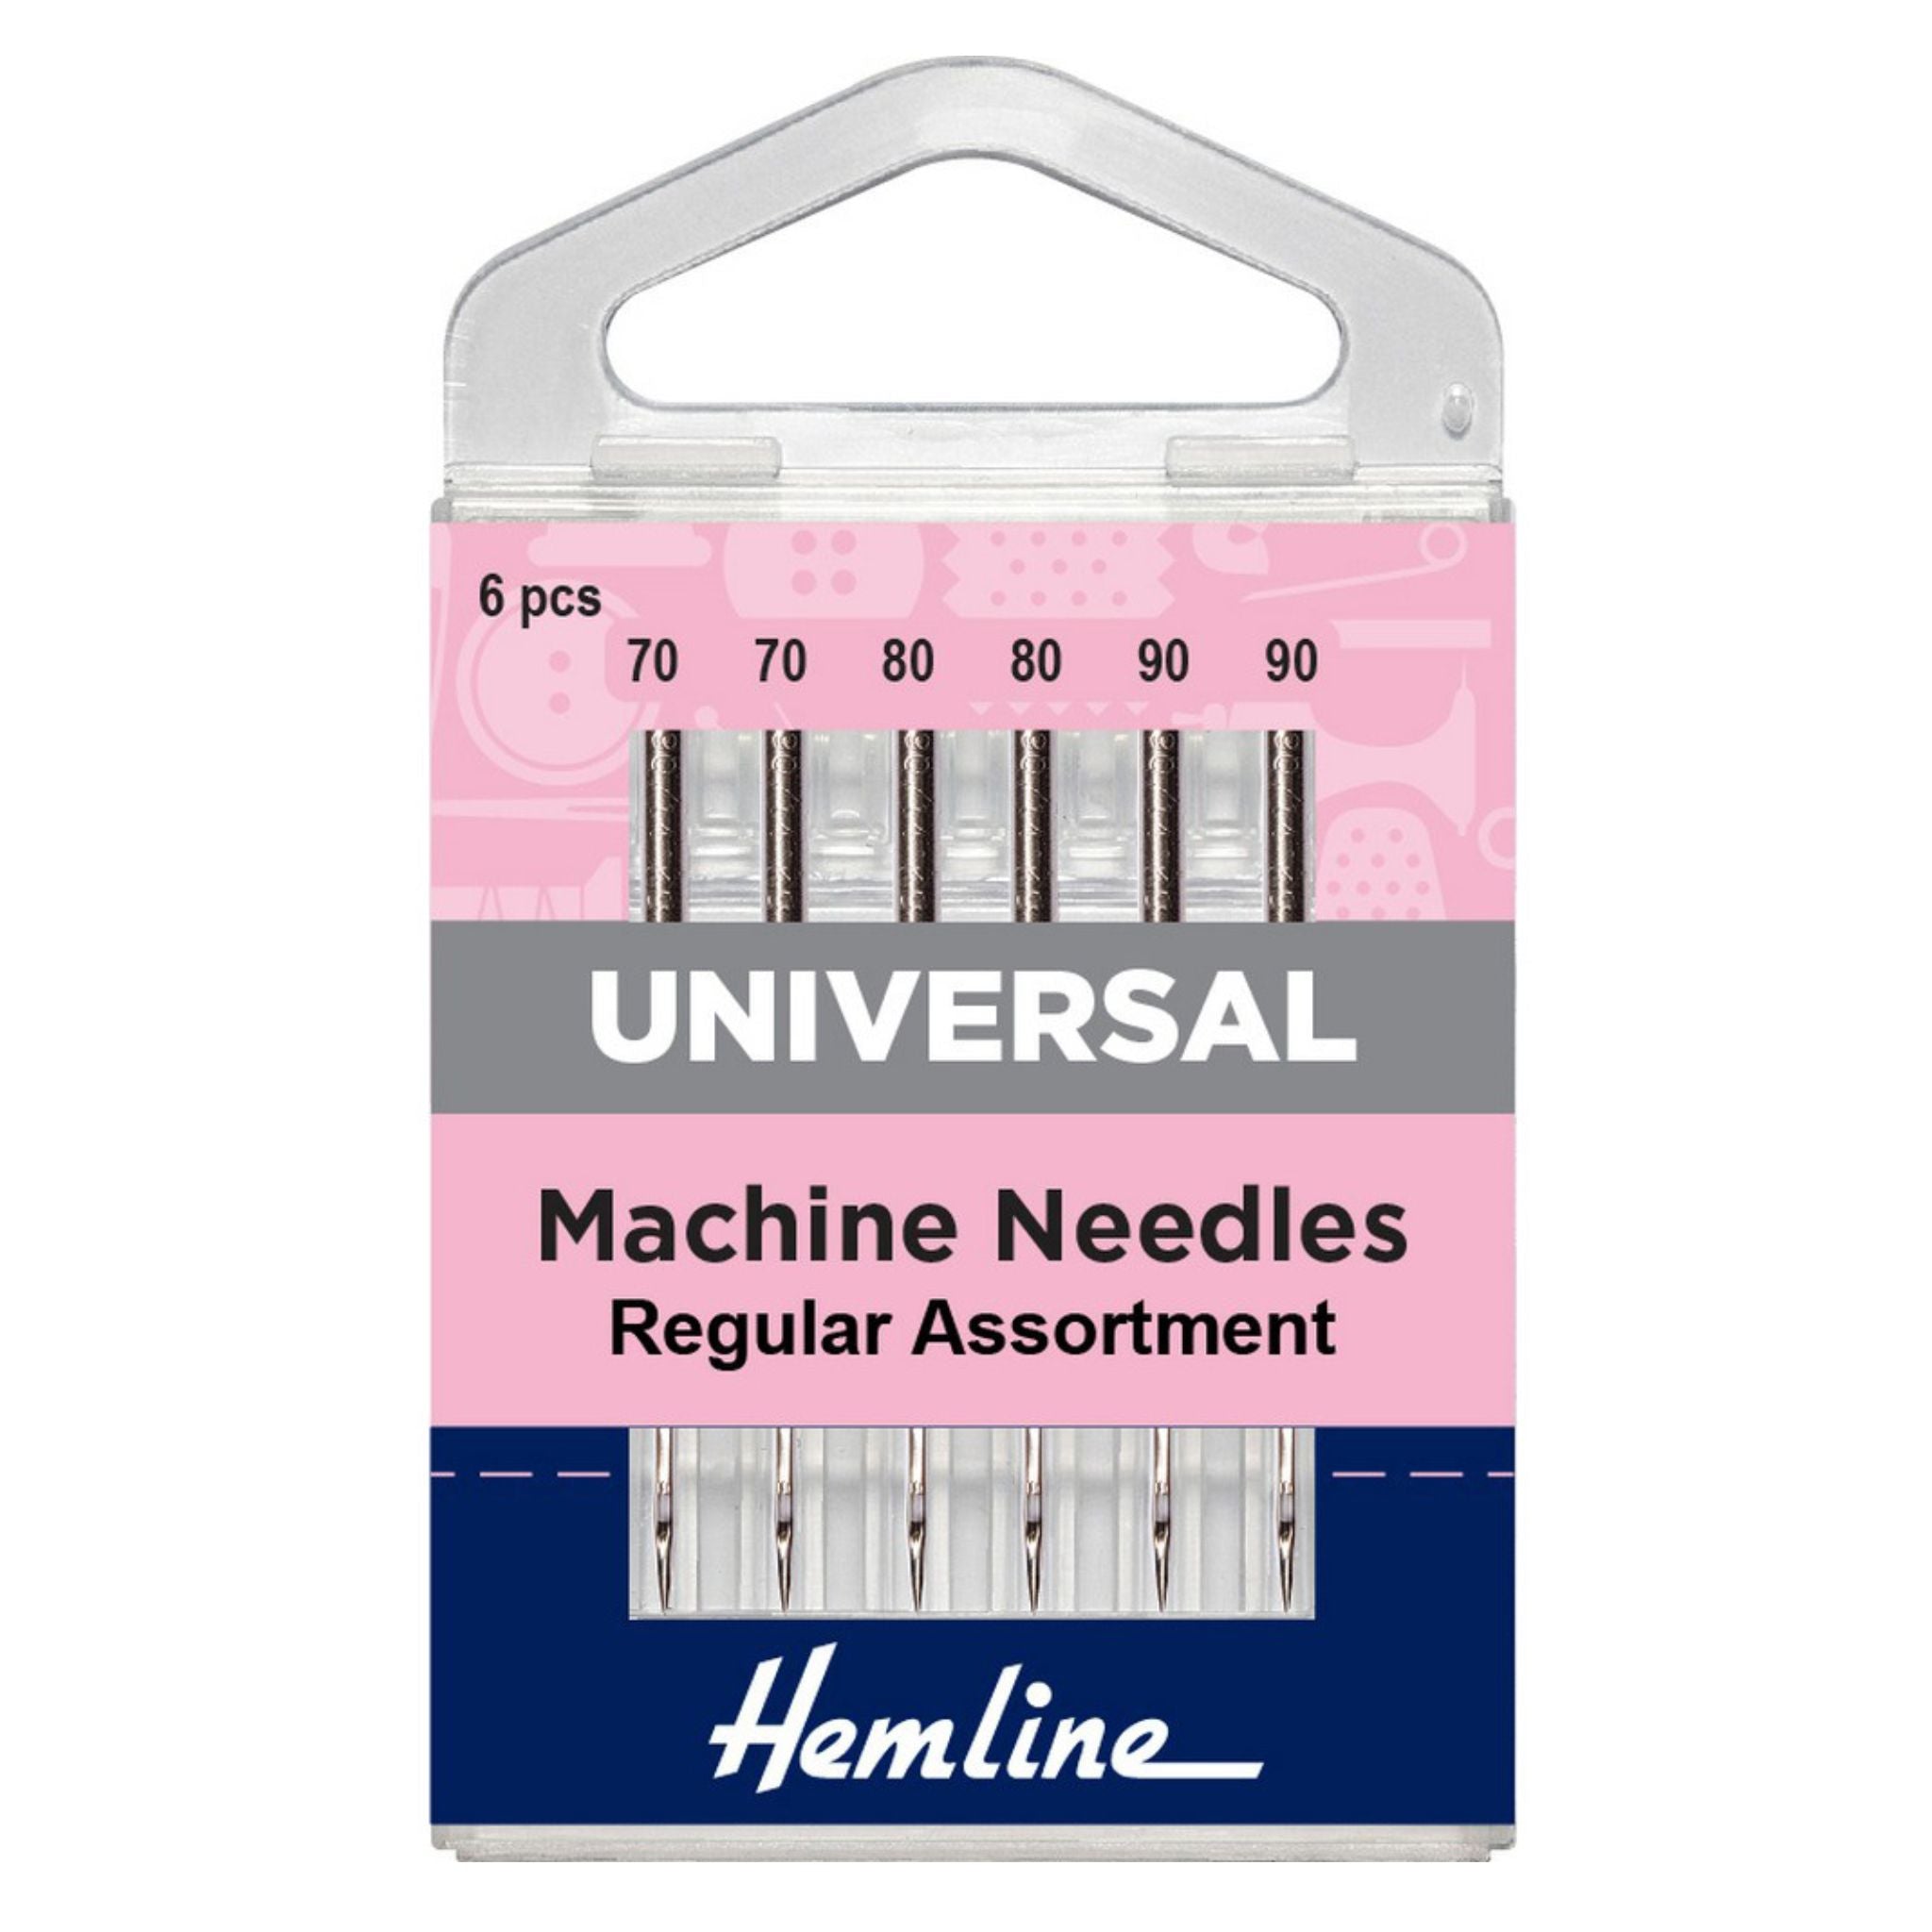 Hemline universal machine needles assorted 